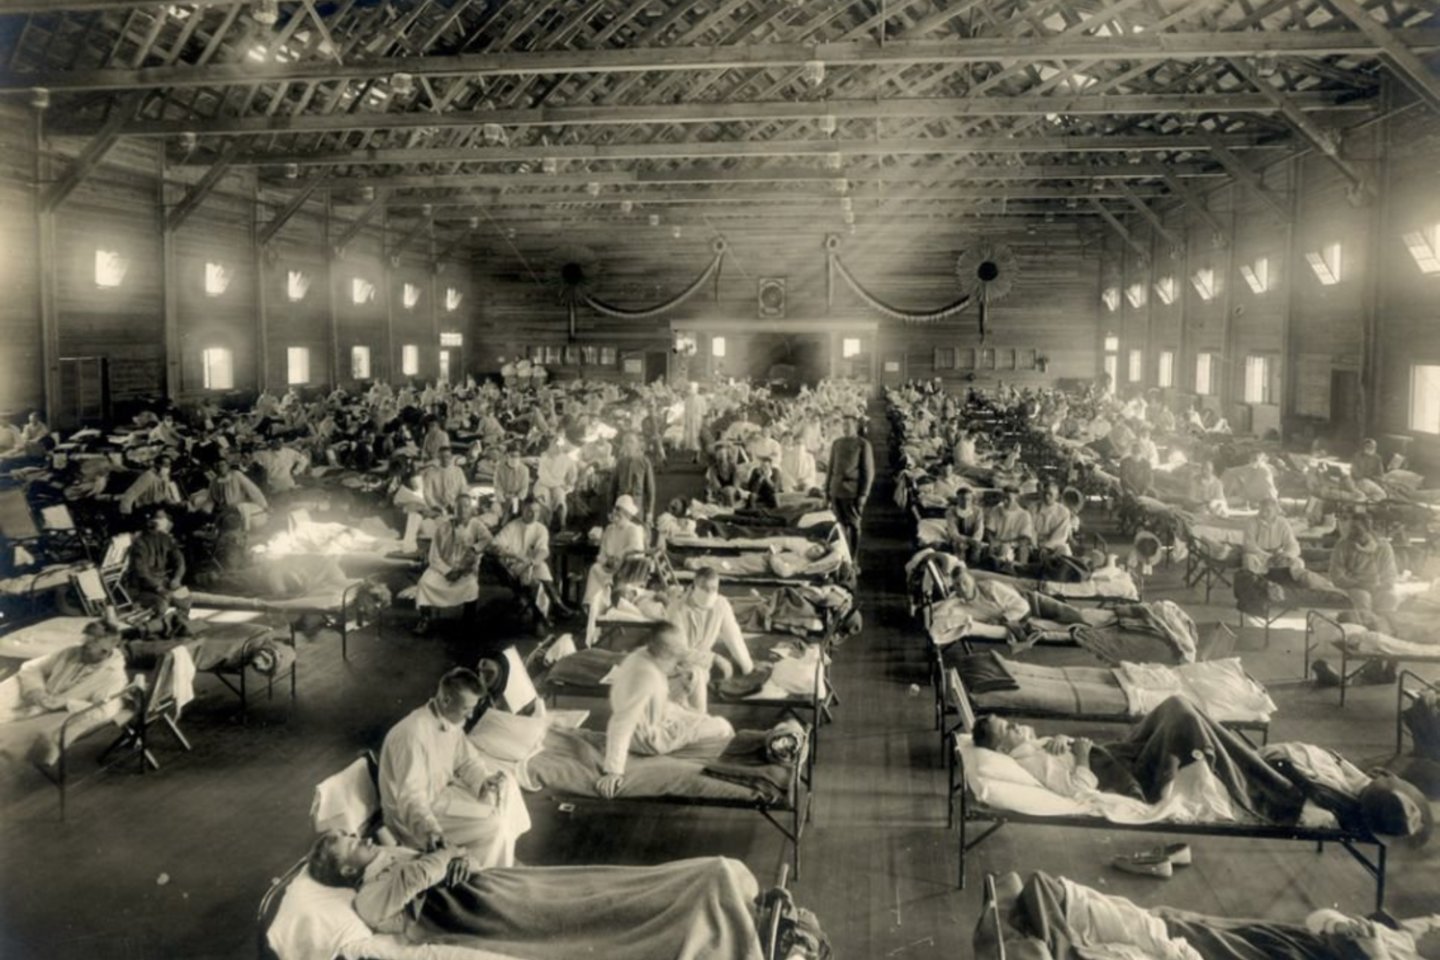  Manoma, kad nuo „ispaniškojo“ gripo mirė 50 mln. žmonių, nors tikrasis skaičius gali būti didesnis.<br>Otis Historical Archives, National Museum of Health and Medicine nuotr. 